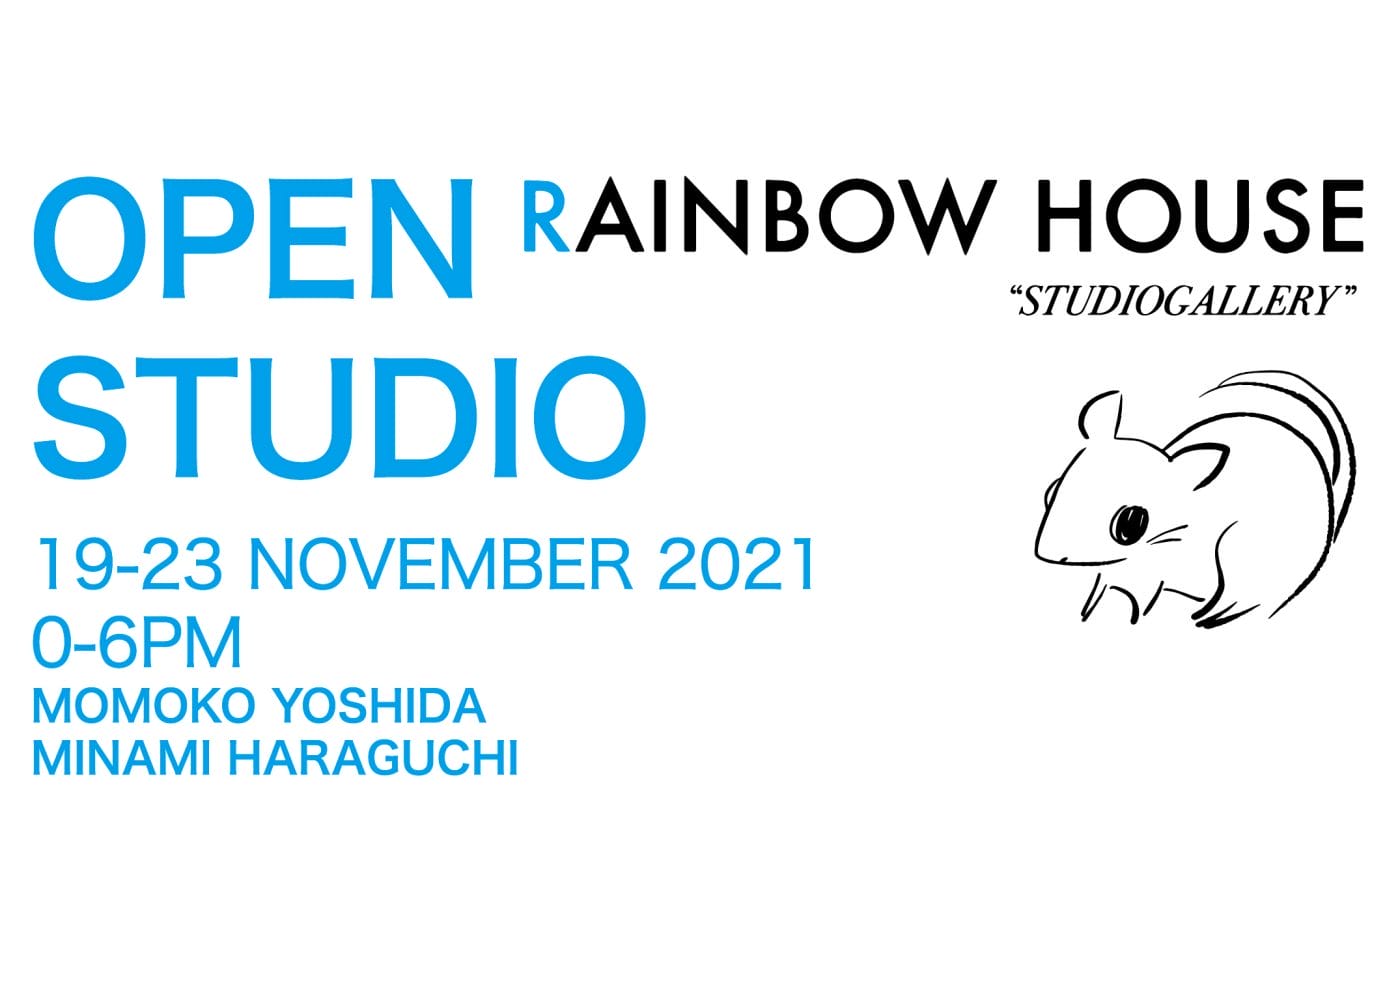 大阪の若手アーティスト2人のスタジオを一般公開。「RAINBOW HOUSE オープンスタジオ」開催。